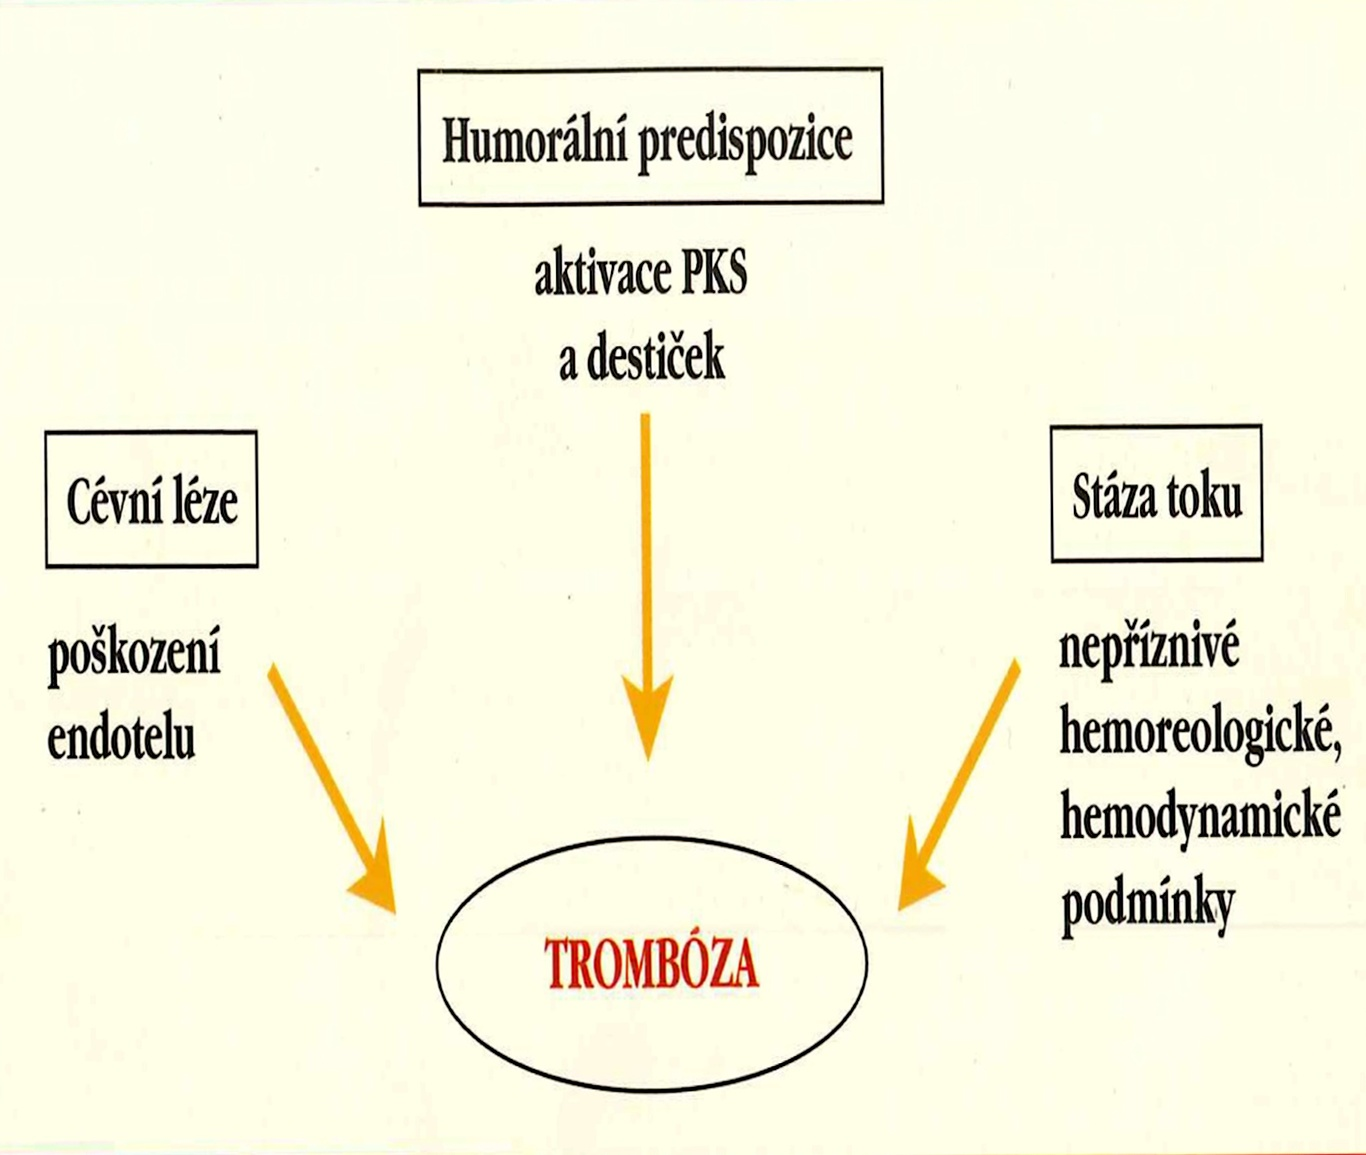 30 Kapitola 3. Rizikové faktory trombózy Obrázek 3.1: Virchowova triáda, převzato z ŠIMÁK, J. a VALENTA, J., Patofyziologie žilní tromboembolické nemoci; PKS - plazmatický koagulační systém. 3.1 Členění rizikových faktorů č.